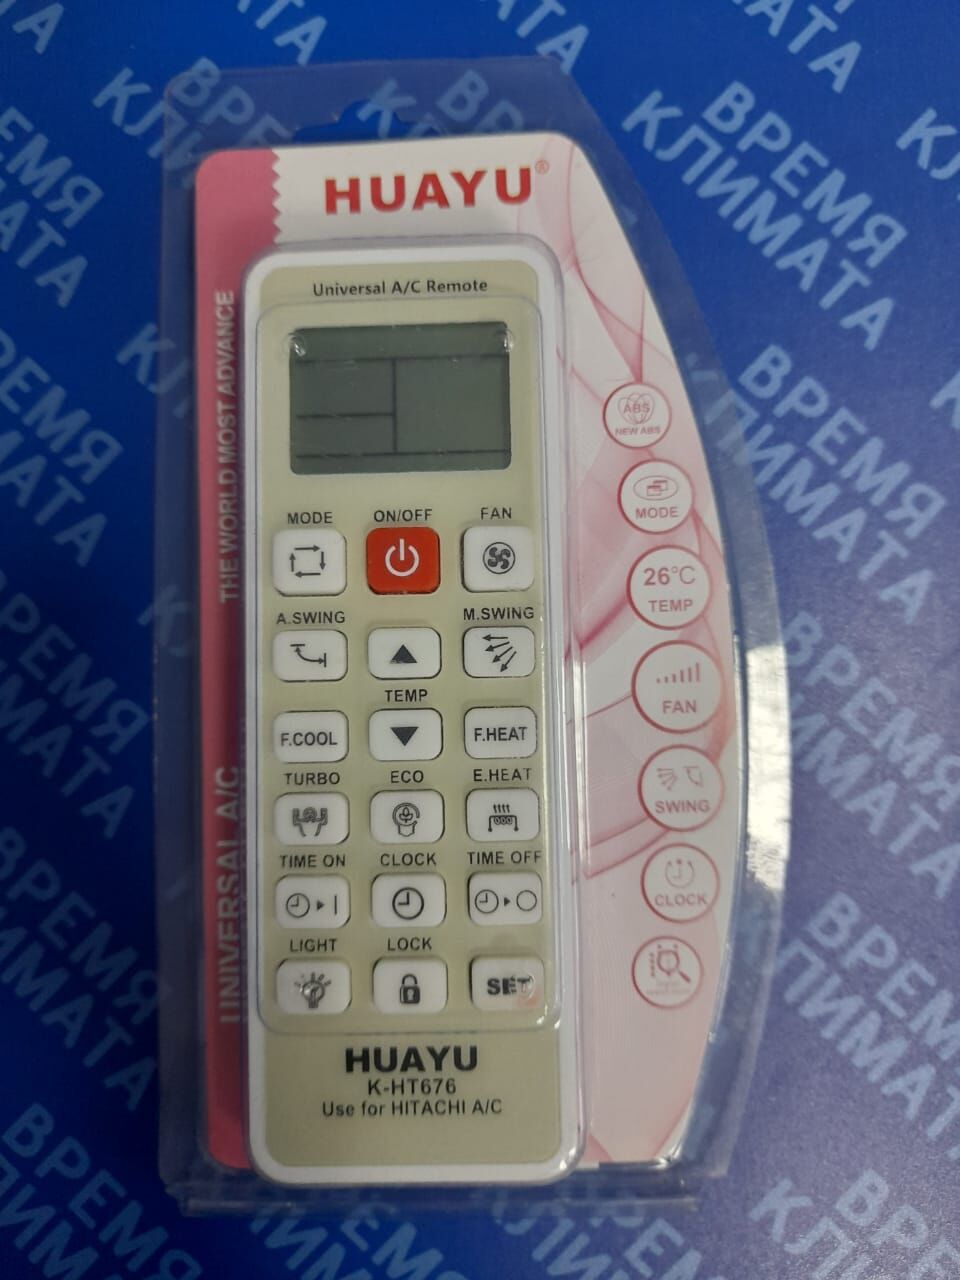 Пульт ДУ универсальный для кондиционера HITACHI HUAYU K-HT676